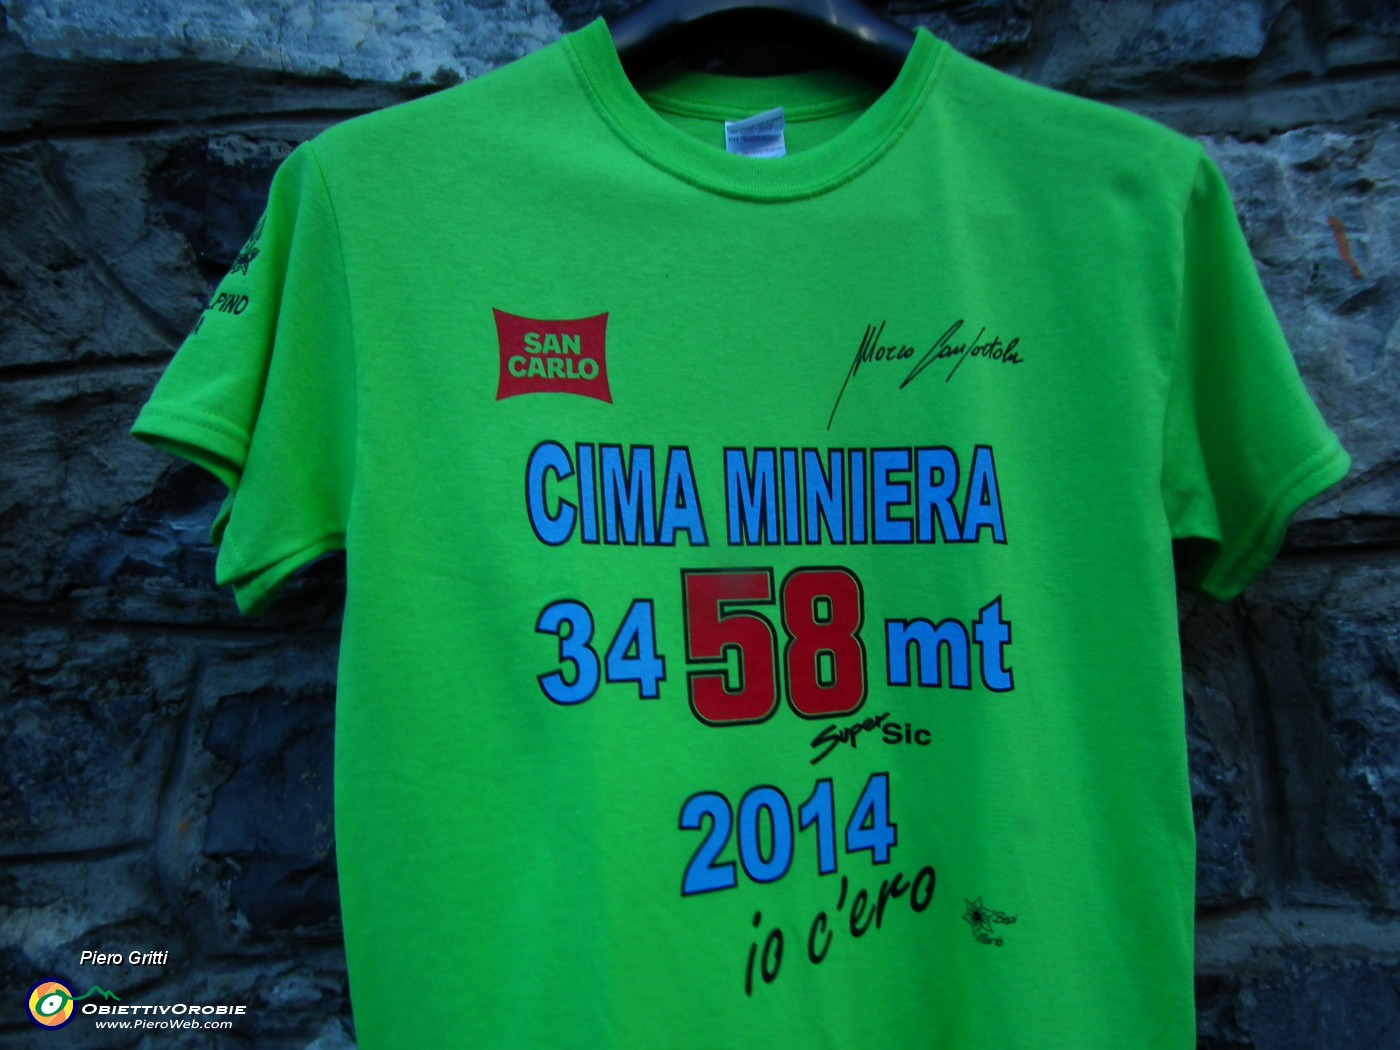 72 Oggi Cima Miniera (3458 m) con Marco Confortola.JPG